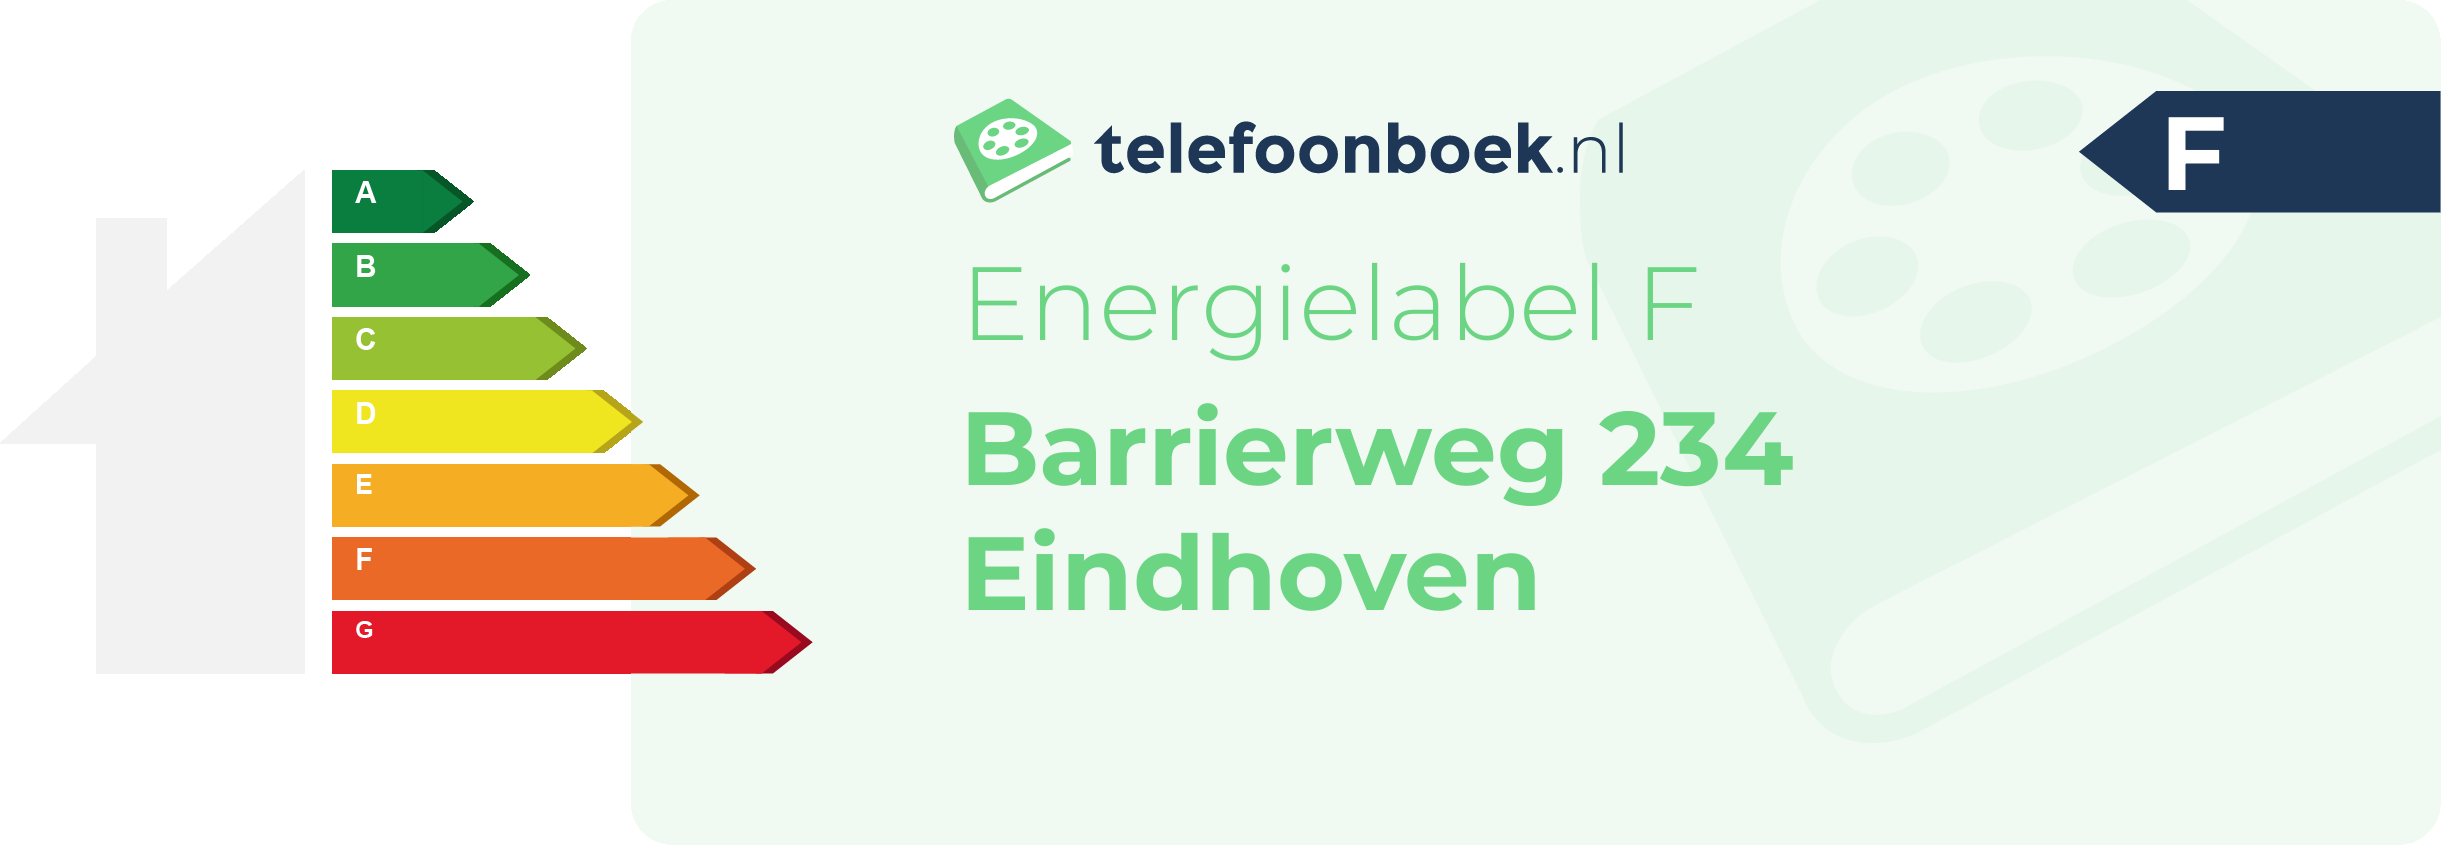 Energielabel Barrierweg 234 Eindhoven